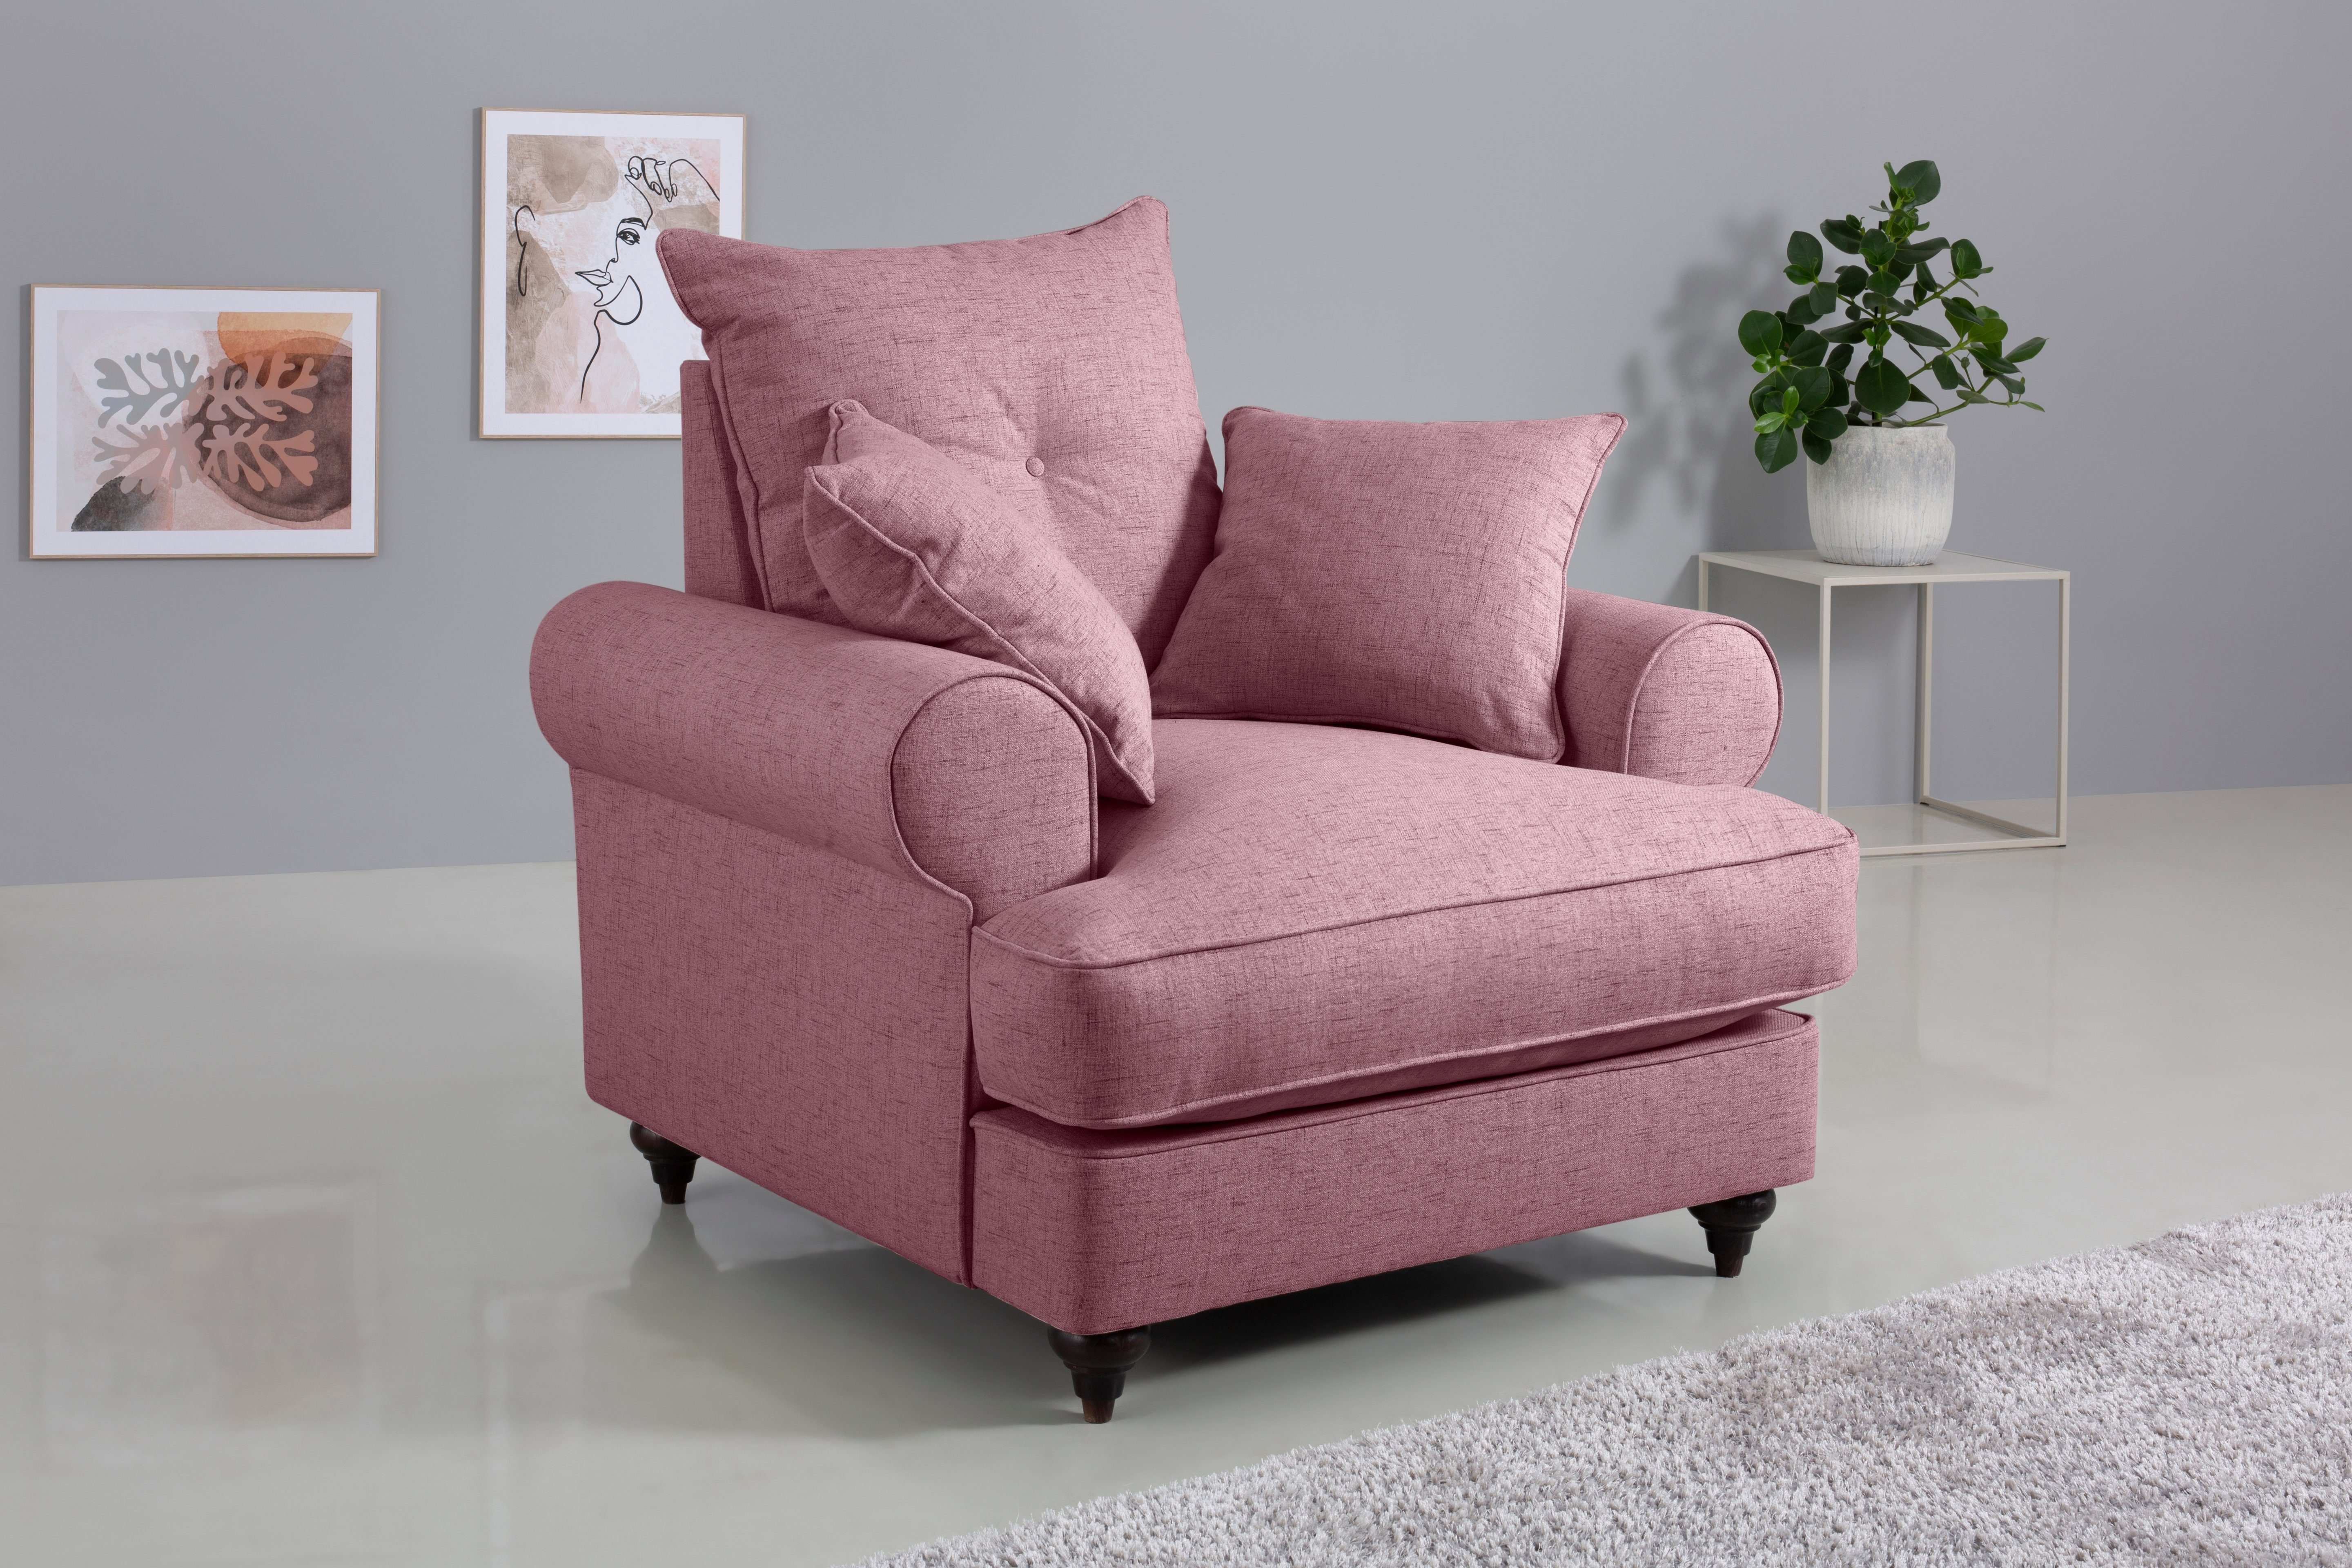 Home affaire Sessel Bloomer, mit hochwertigem Kaltschaum, in verschiedenen Farben erhältlich violet | Einzelsessel